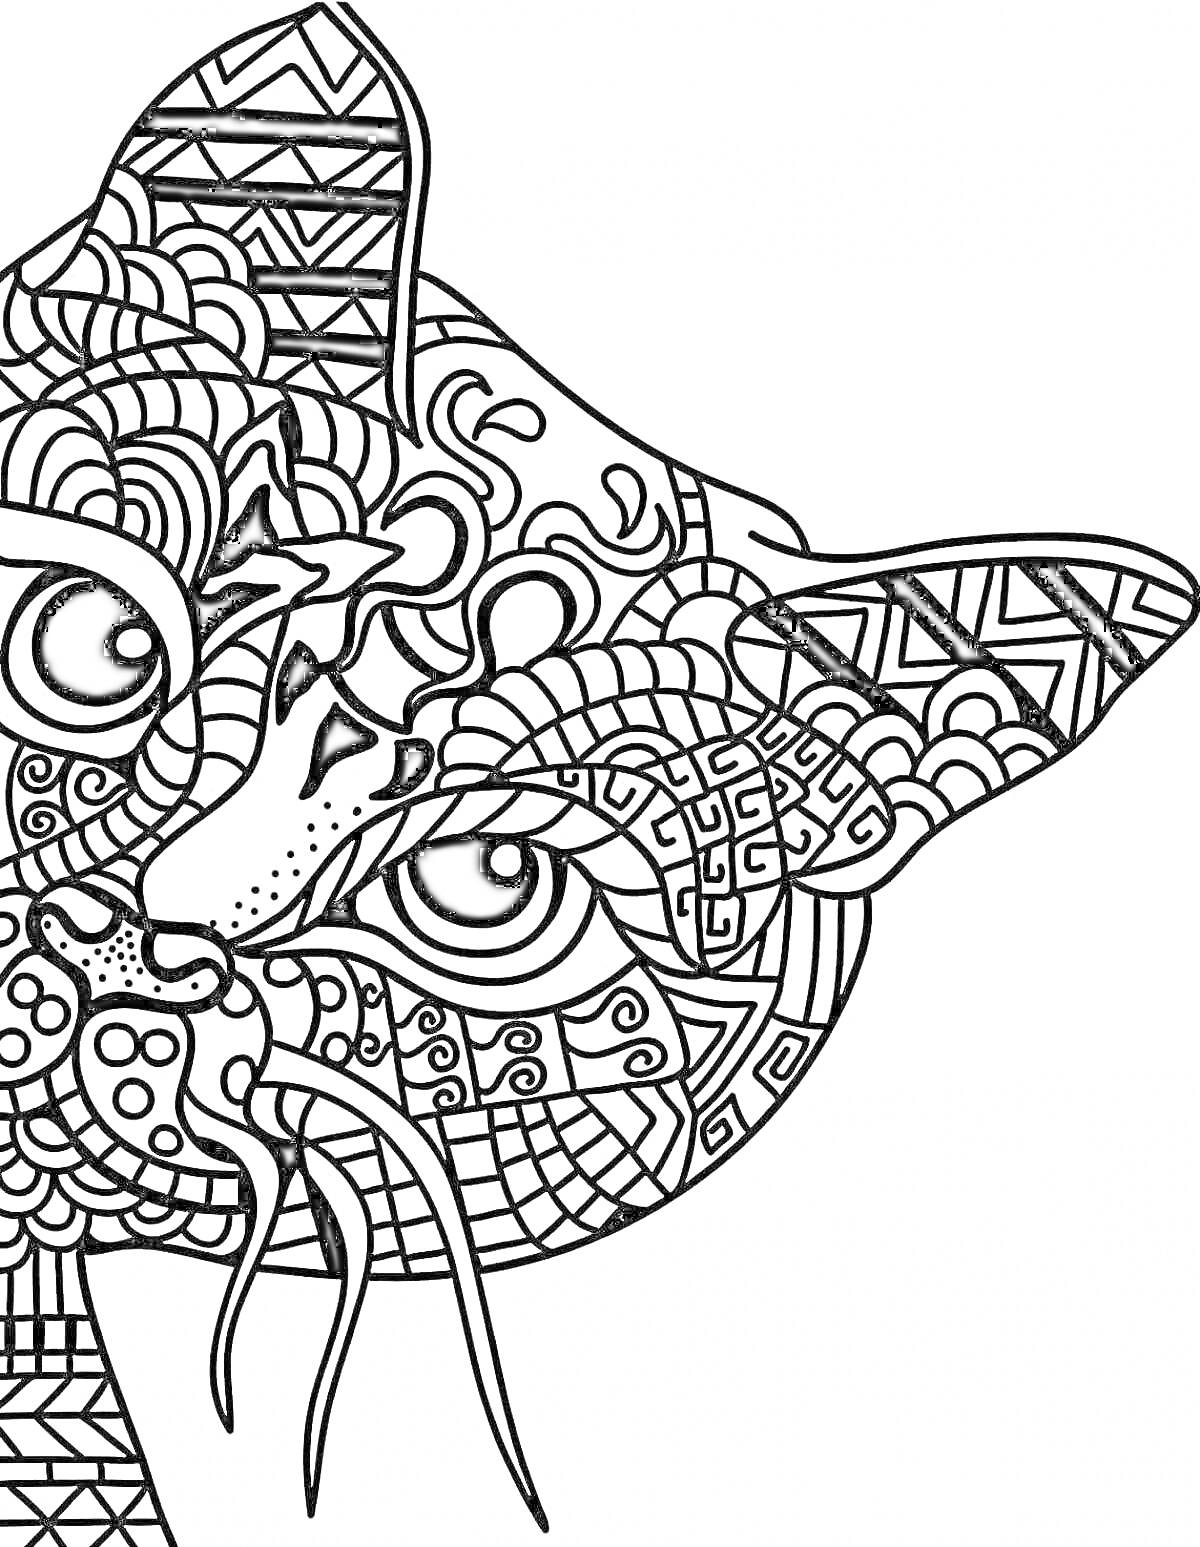 Раскраска Комплексный кот в узорах с геометрическими и абстрактными элементами